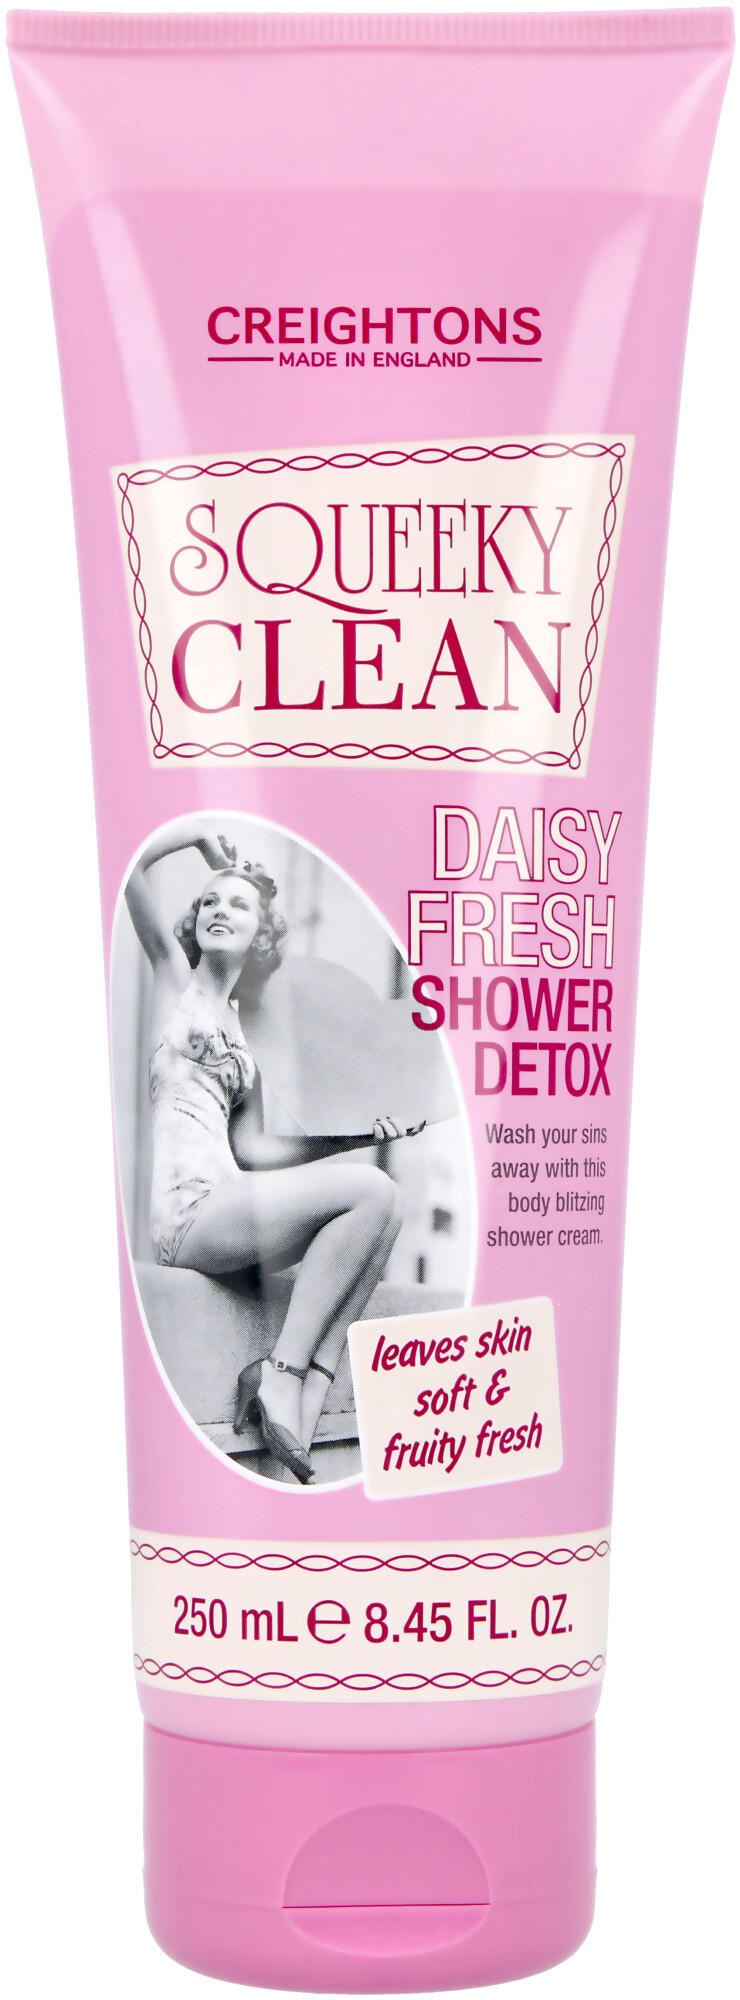 Squeeky Clean Daisy Fresh Detox Shower Cream 250ml